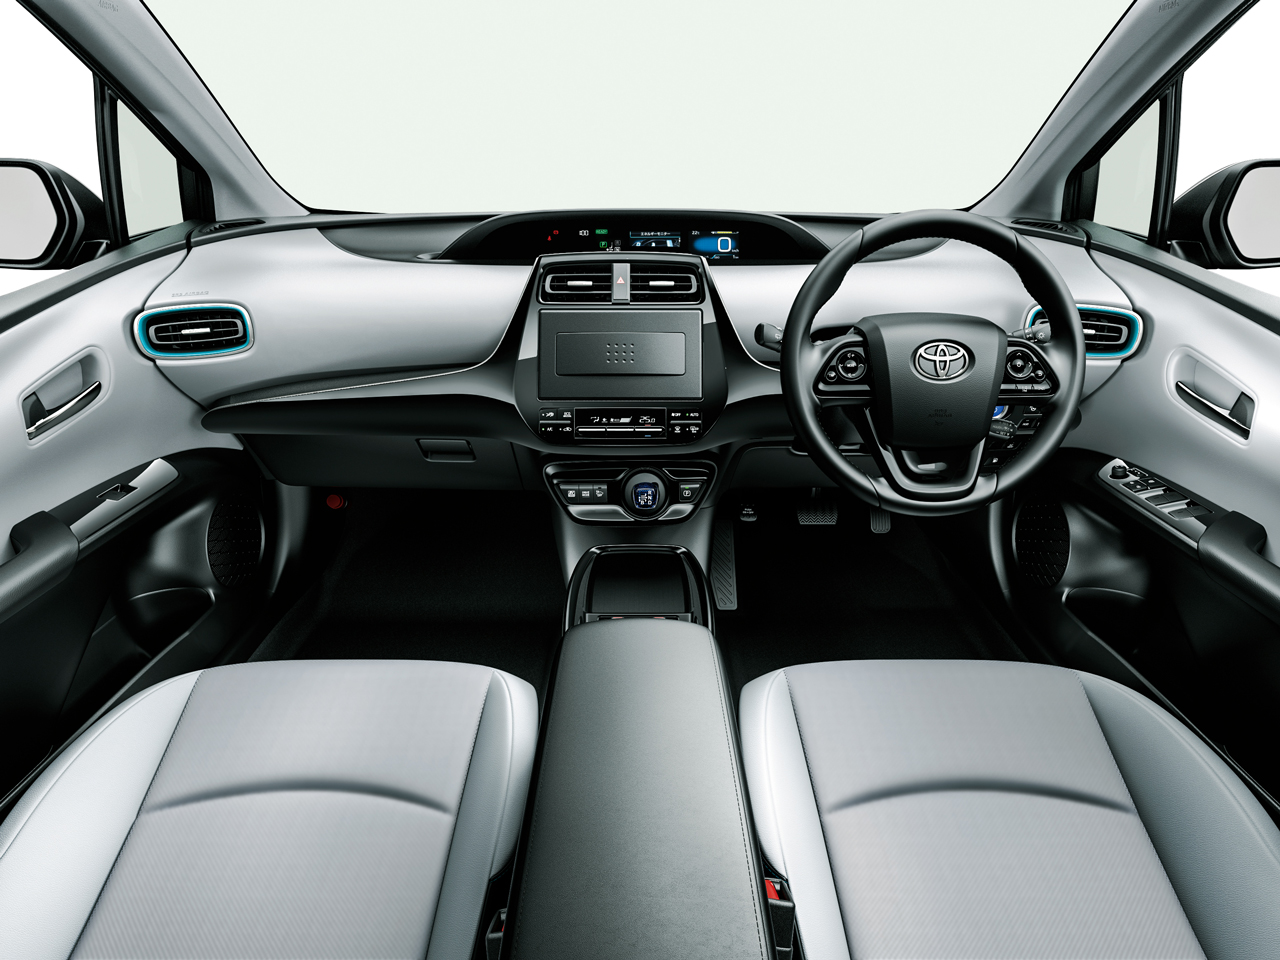 トヨタ プリウス 15年モデル A 4wdの価格 性能 装備 オプション 21年6月3日発売 価格 Com